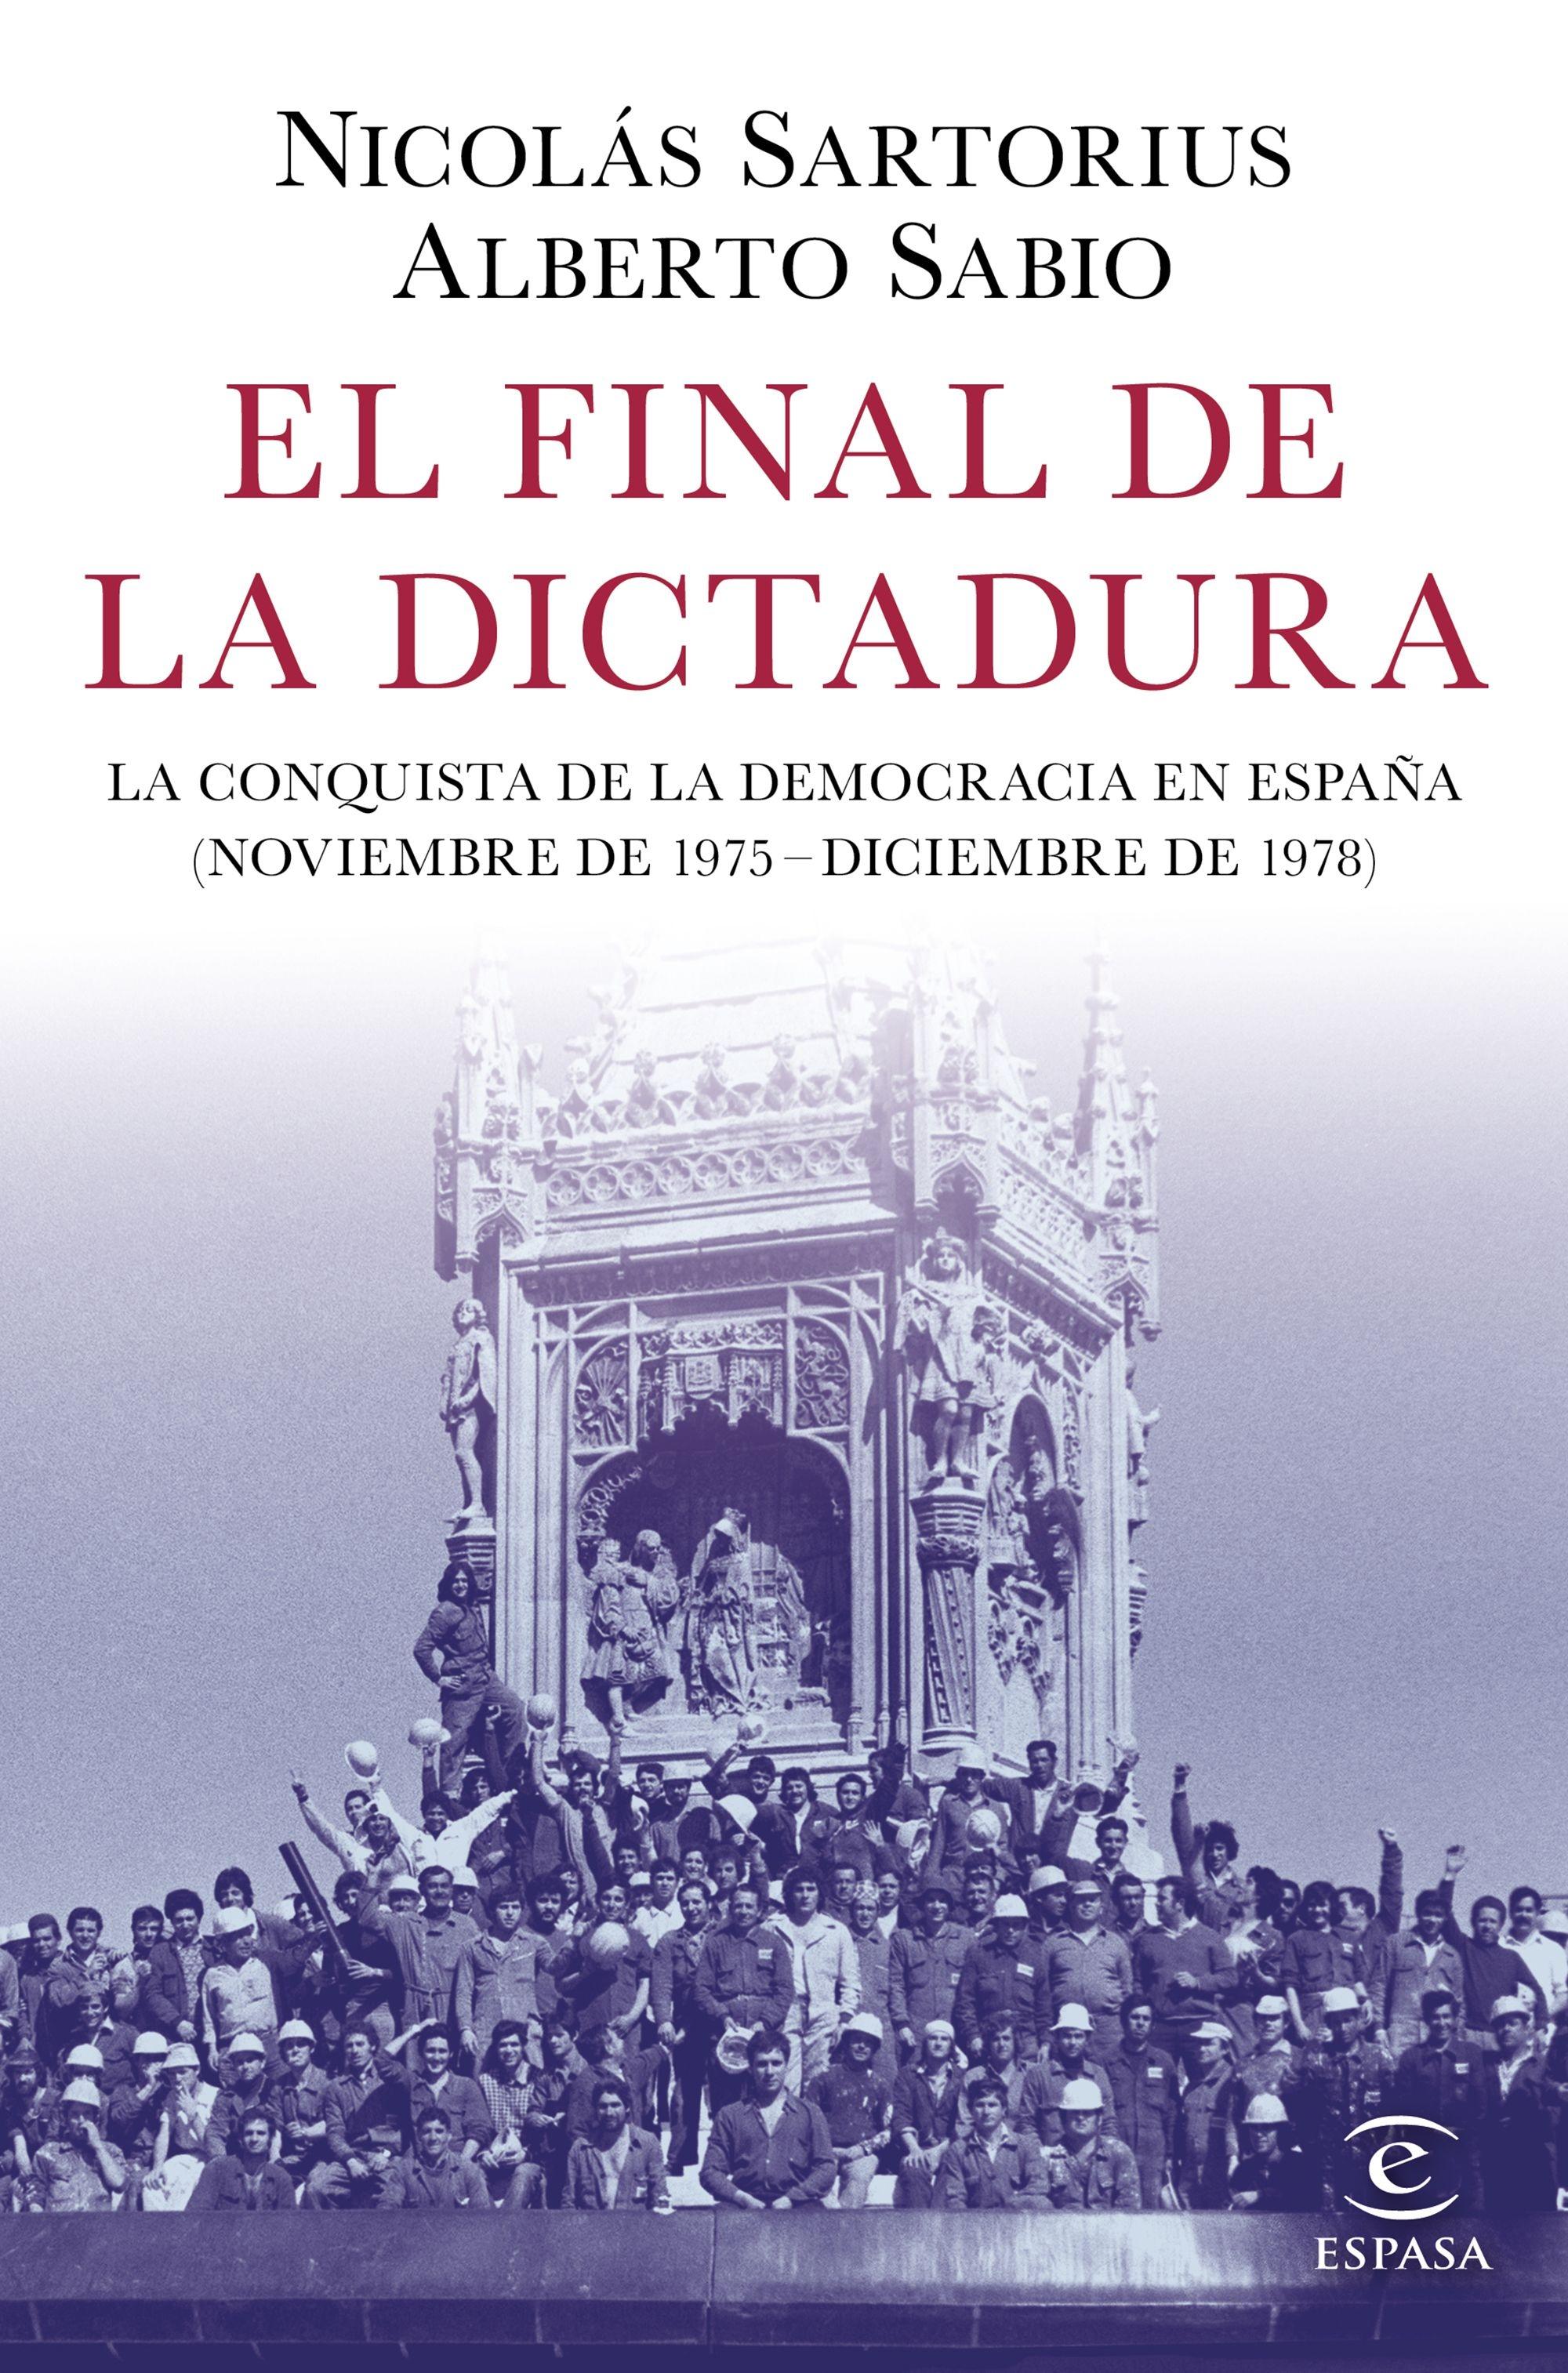 FINAL DE LA DICTADURA, EL "LA CONQUISTA DE LA DEMOCRACIA EN ESPAÑA (NOVIEMBRE DE 1975 - DICIEMBRE D"